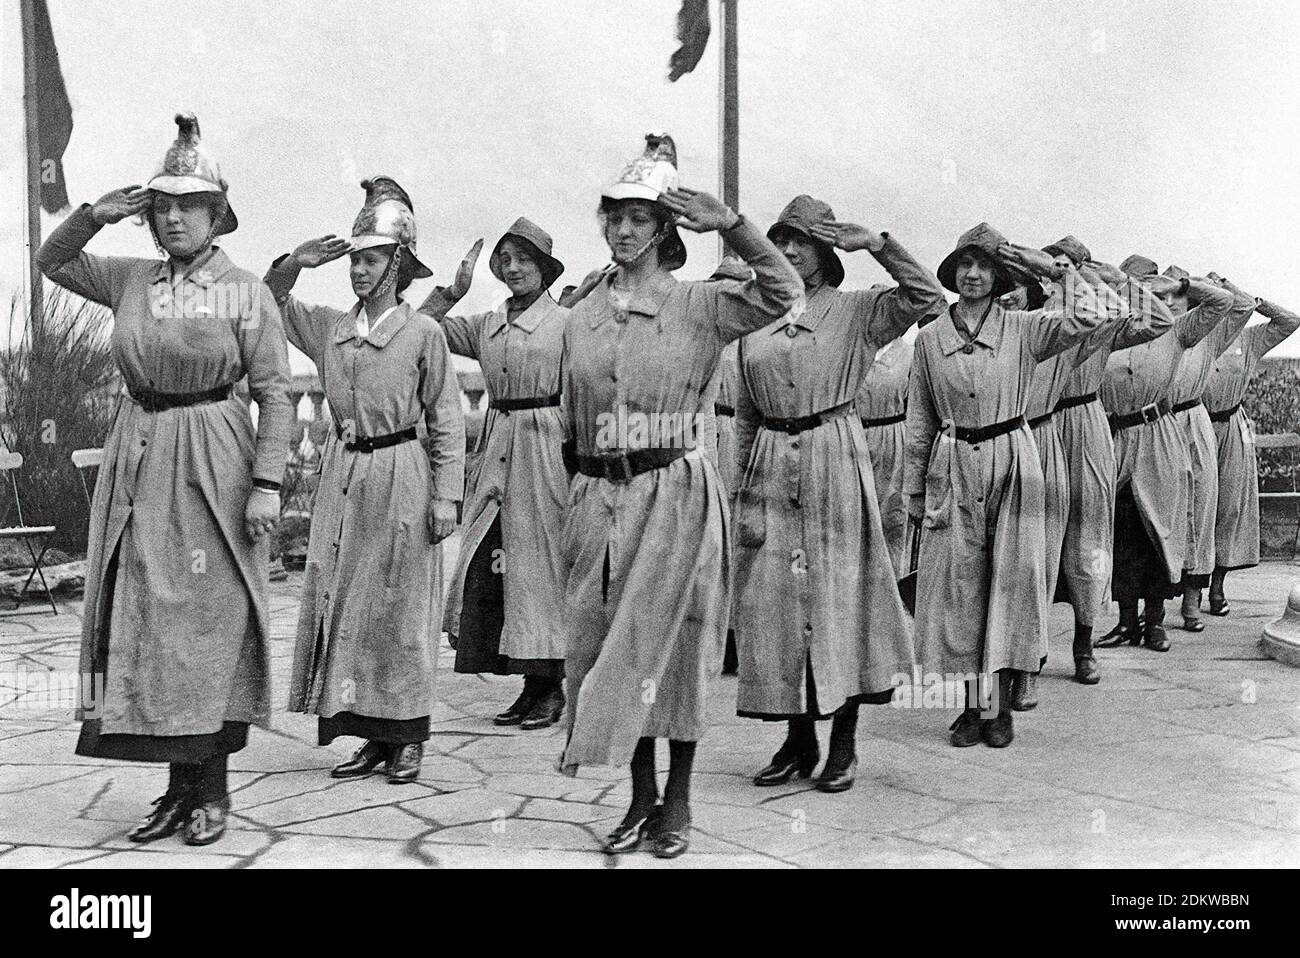 Archivfoto von weiblichen britischen Feuerwehrleuten. Eine britische Frauenfeuerwehr grüßt, März 1916. Stockfoto